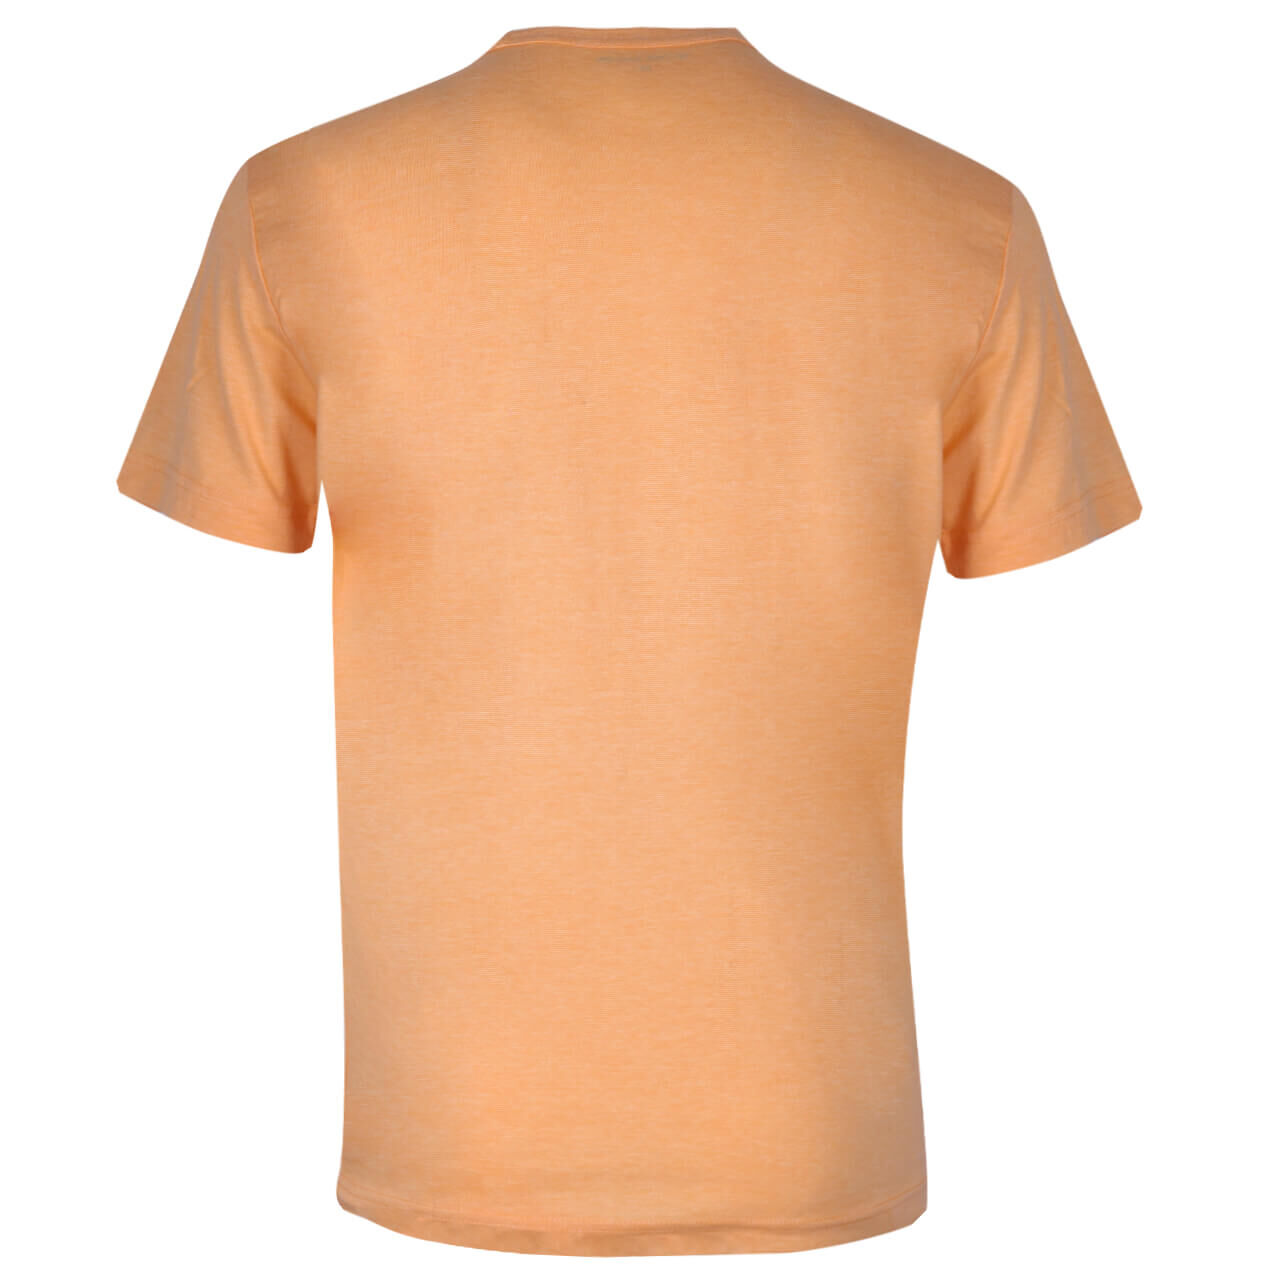 Tom Tailor Herren T-Shirt orange white striped